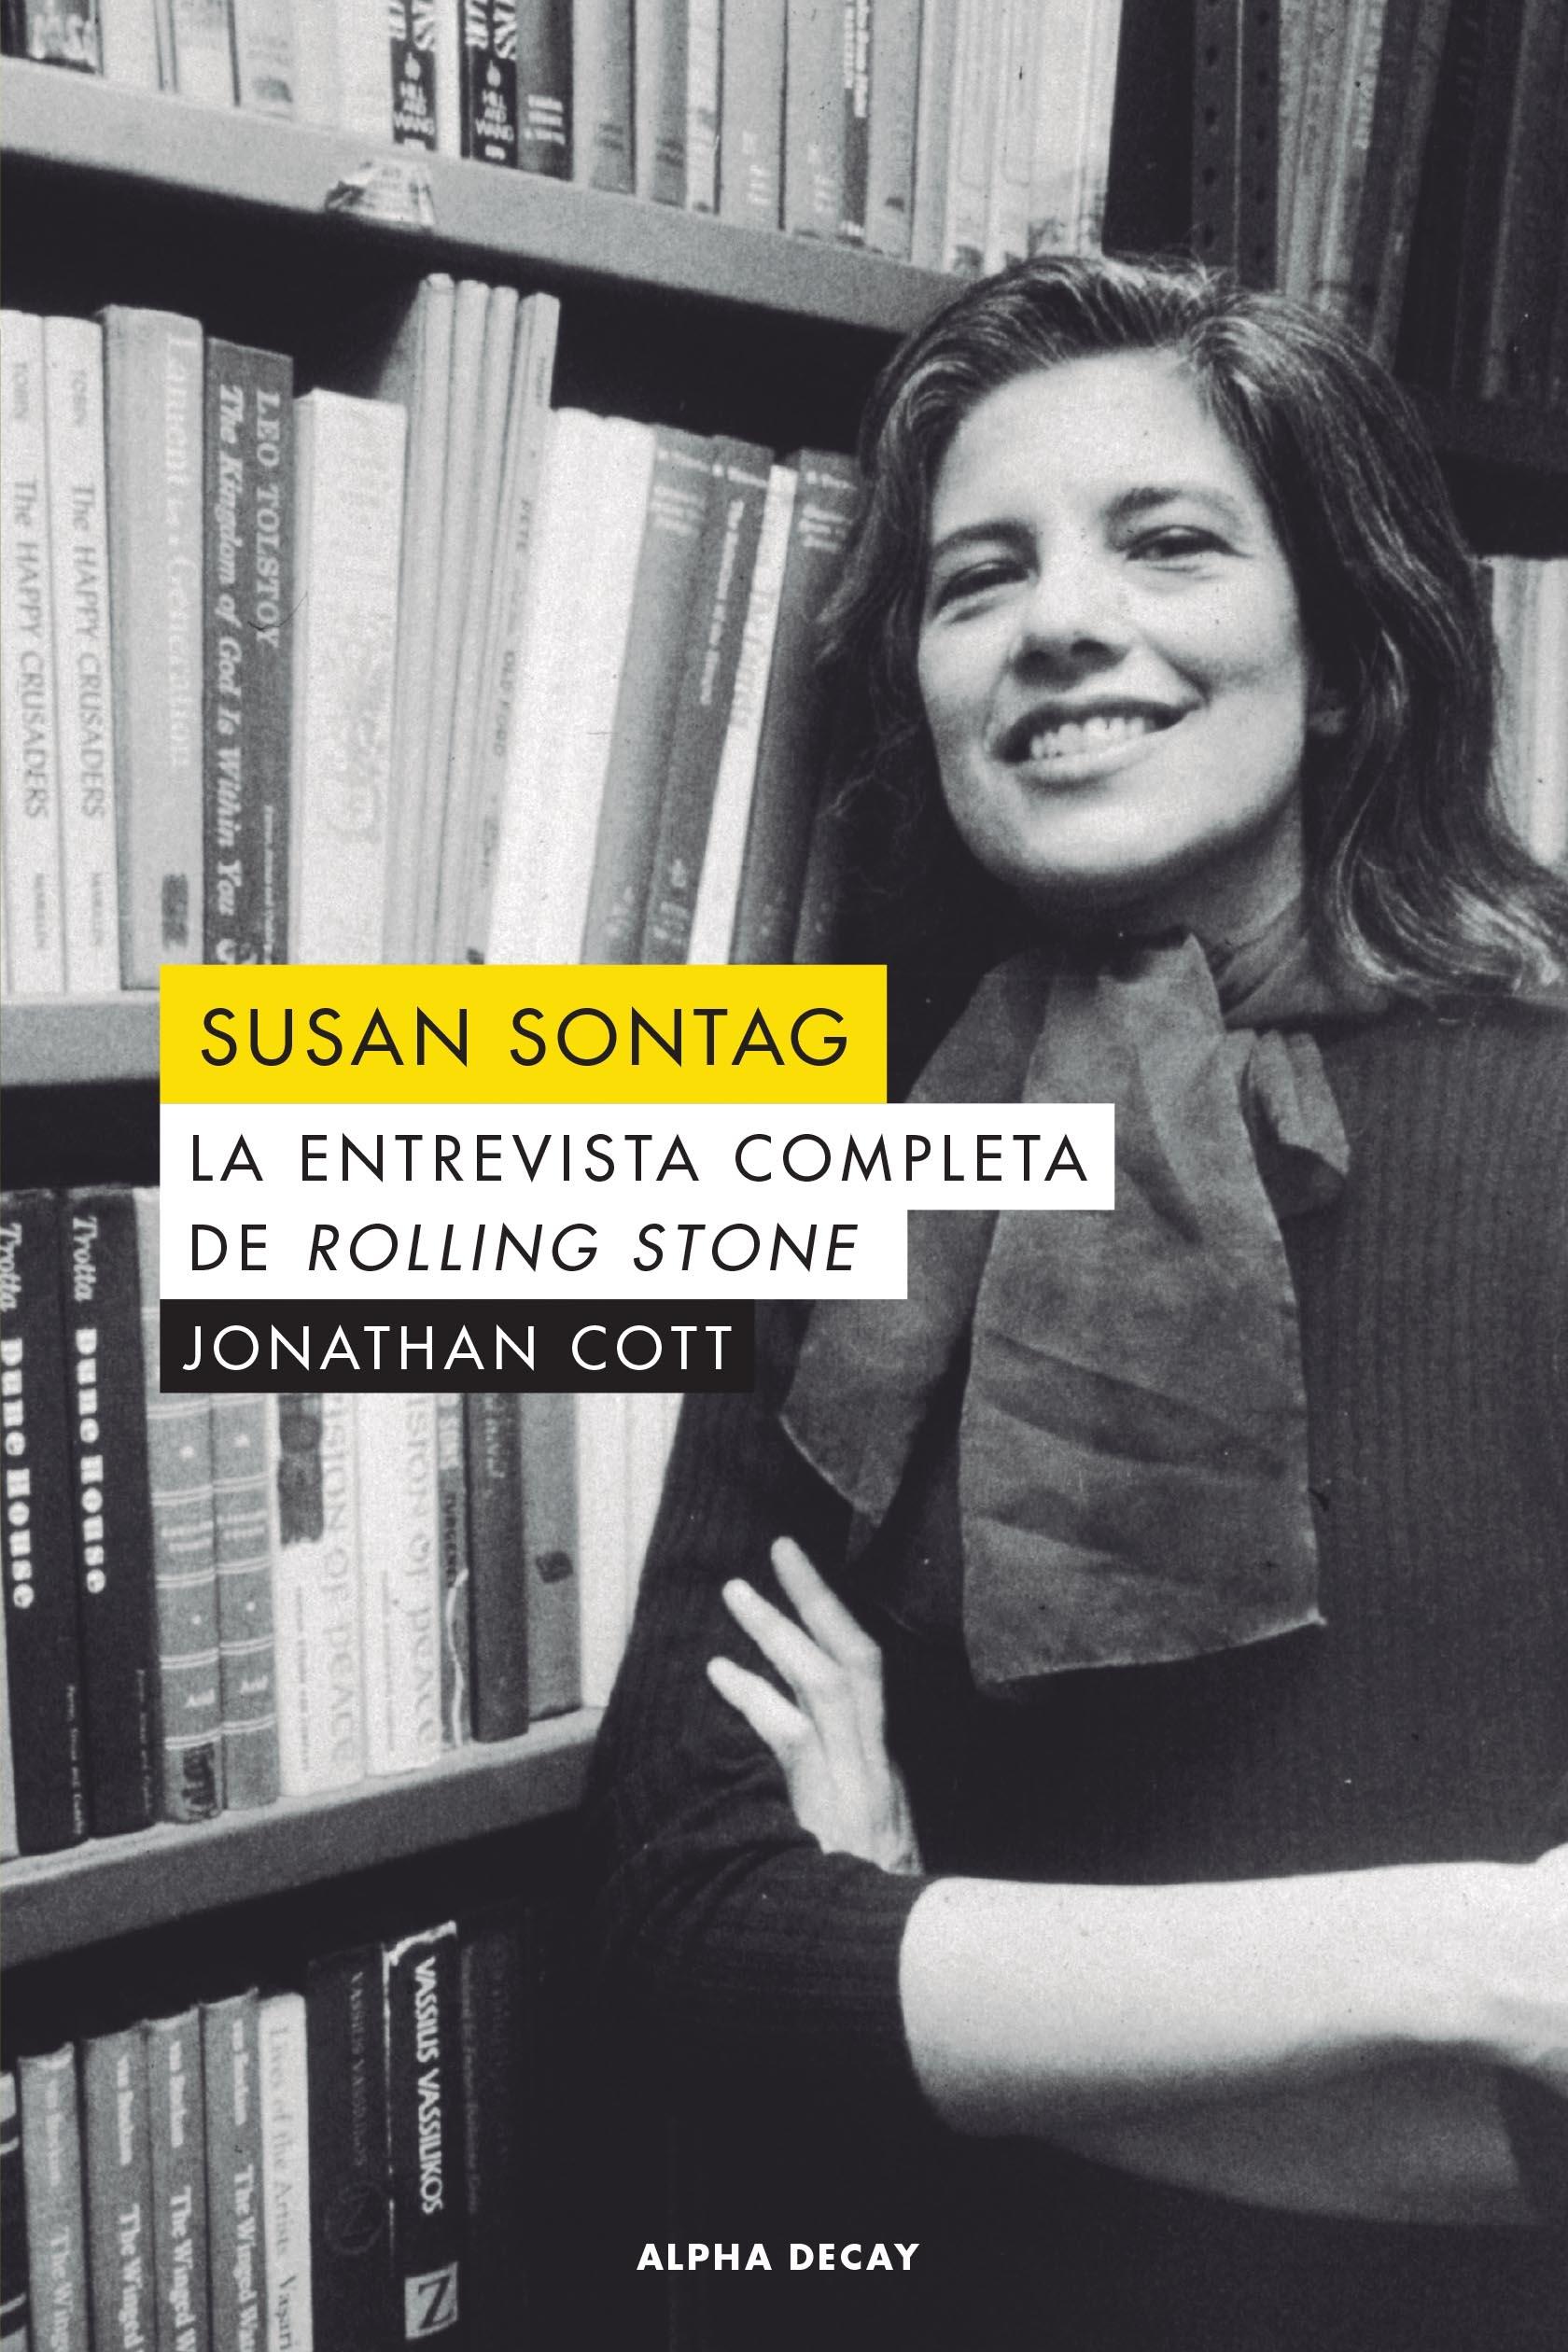 SUSAN SONTAG. LA ENTREVISTA COMPLETA DE ROLLING STONE